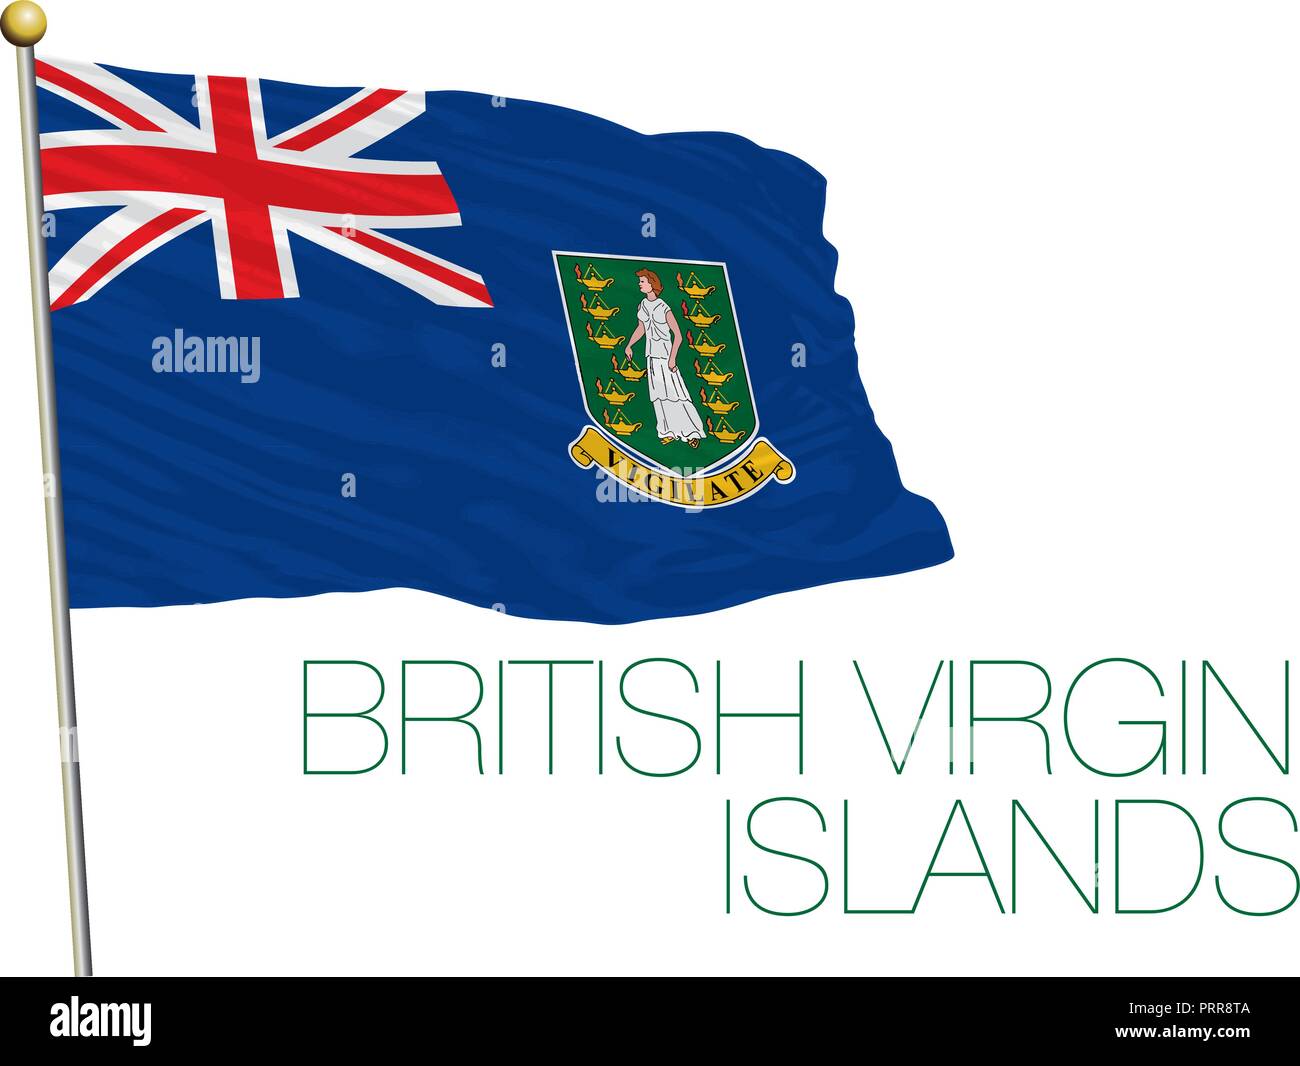 British Virgin Islands official flag, vector illustration Stock Vector